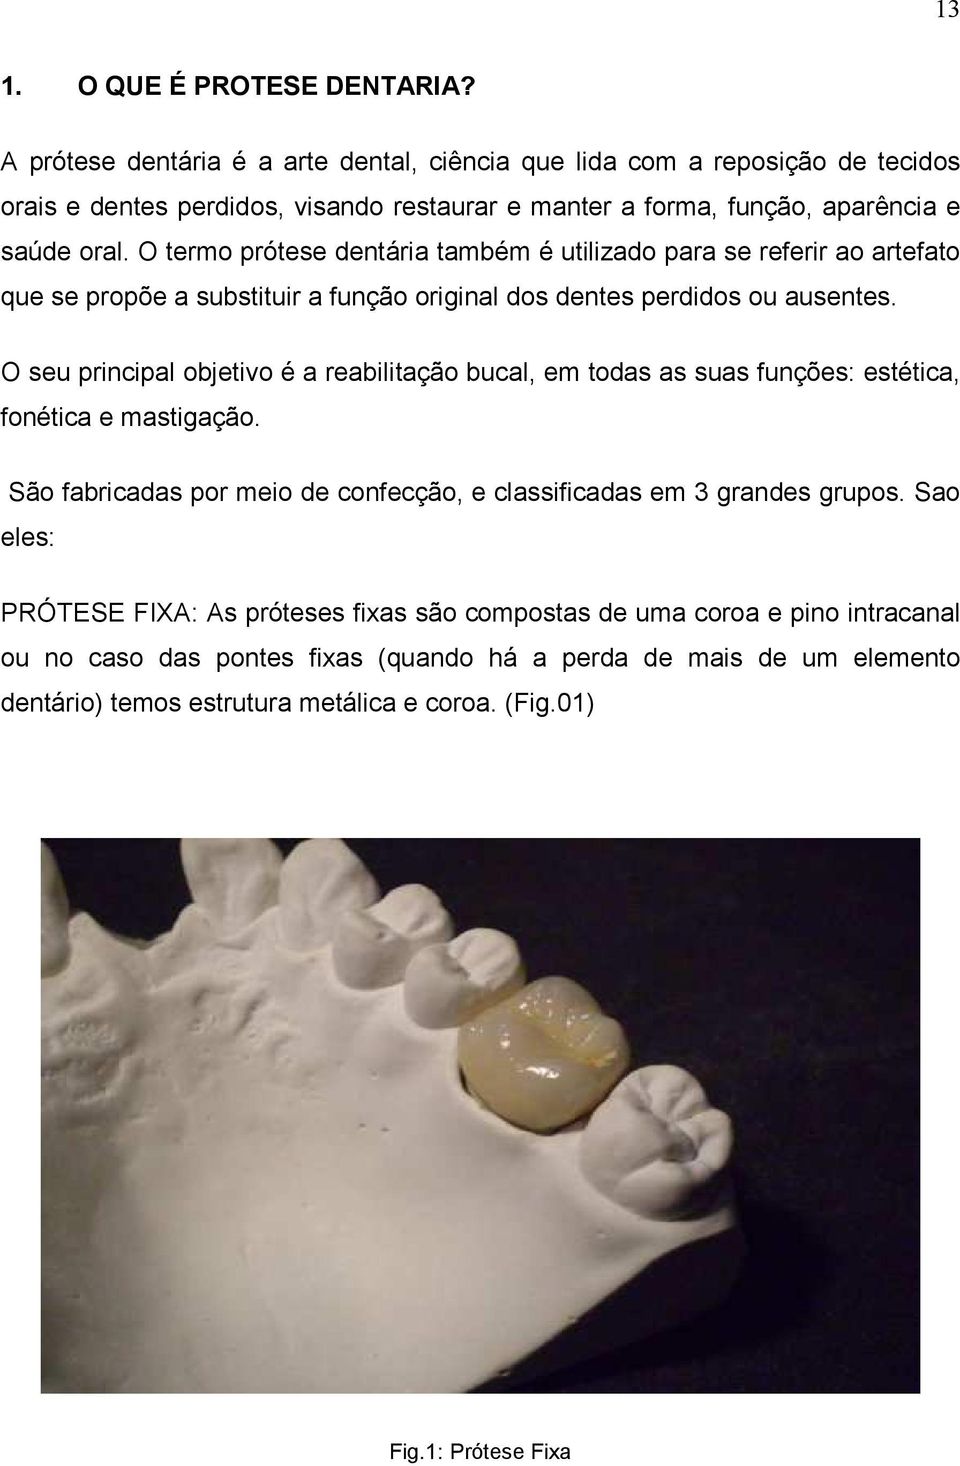 O termo prótese dentária também é utilizado para se referir ao artefato que se propõe a substituir a função original dos dentes perdidos ou ausentes.